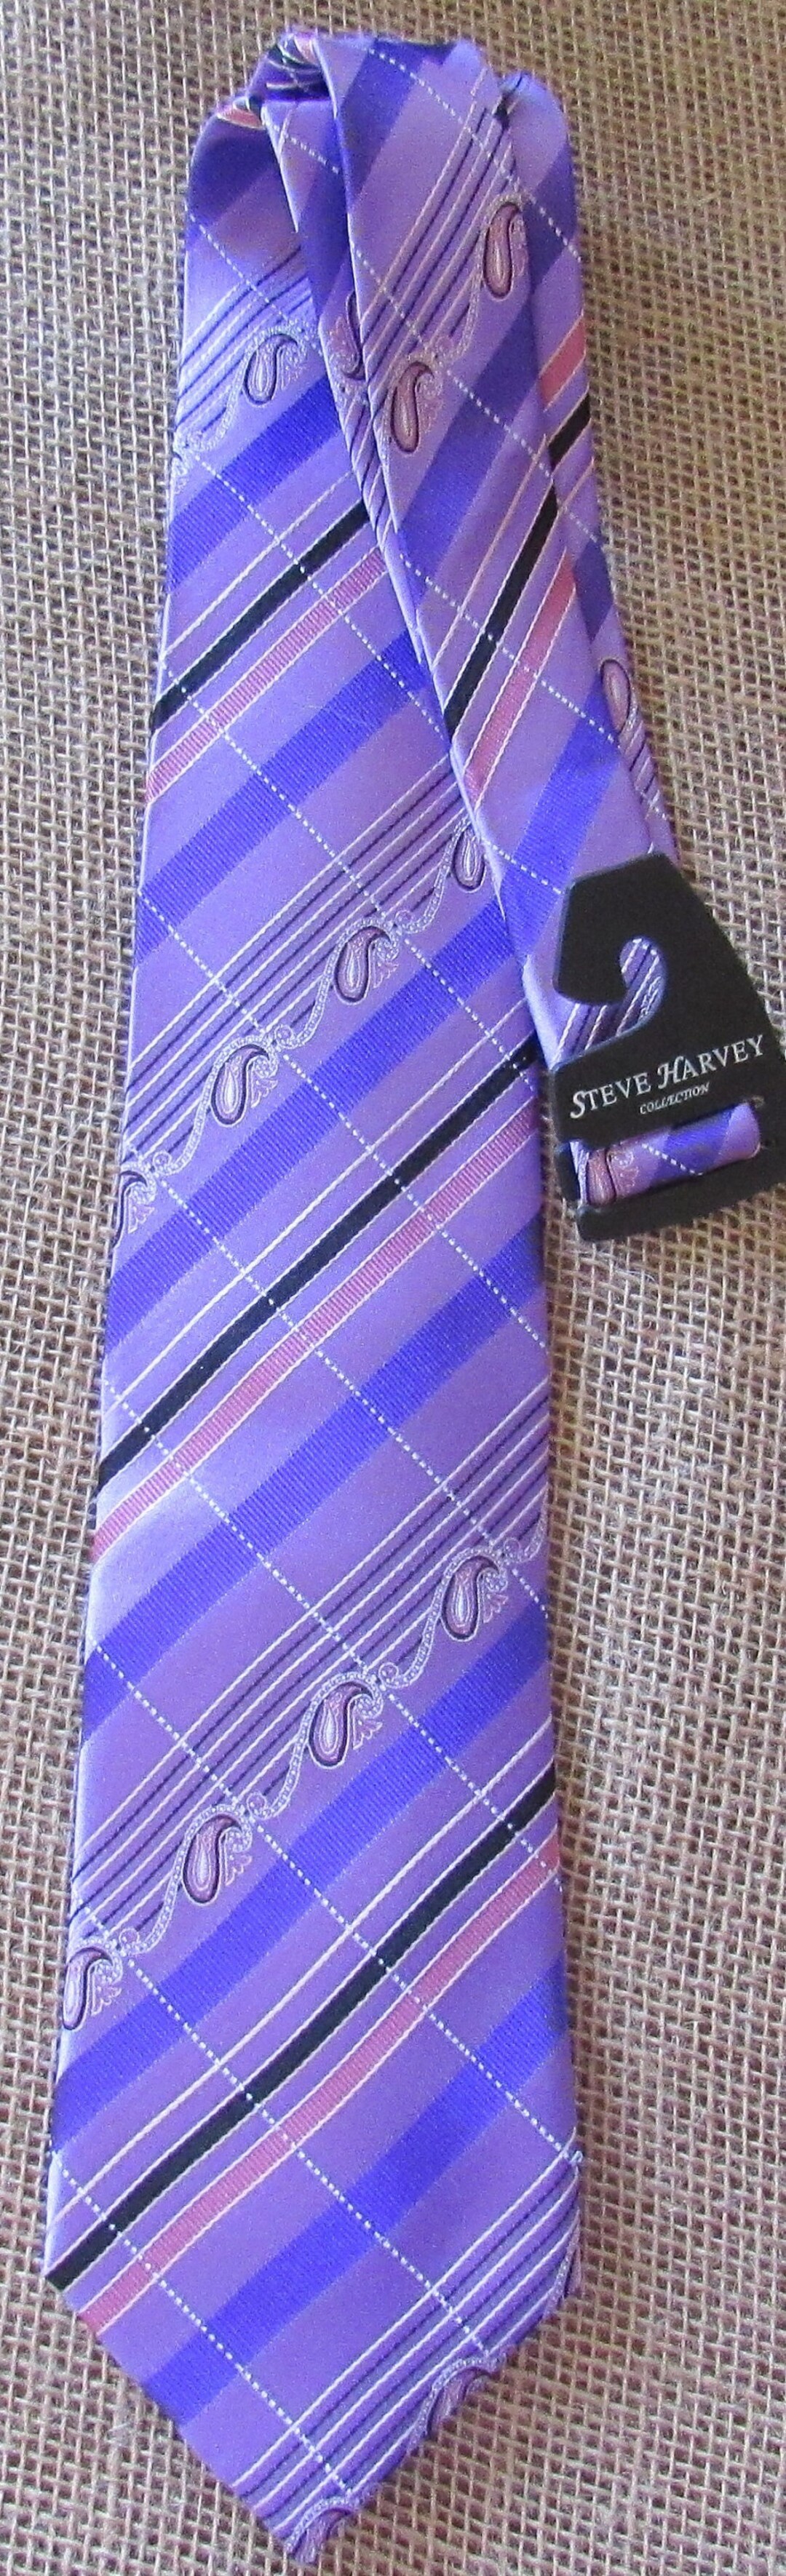 Steve Harvey Long Necktie Free Shipping Silk Purple - Etsy